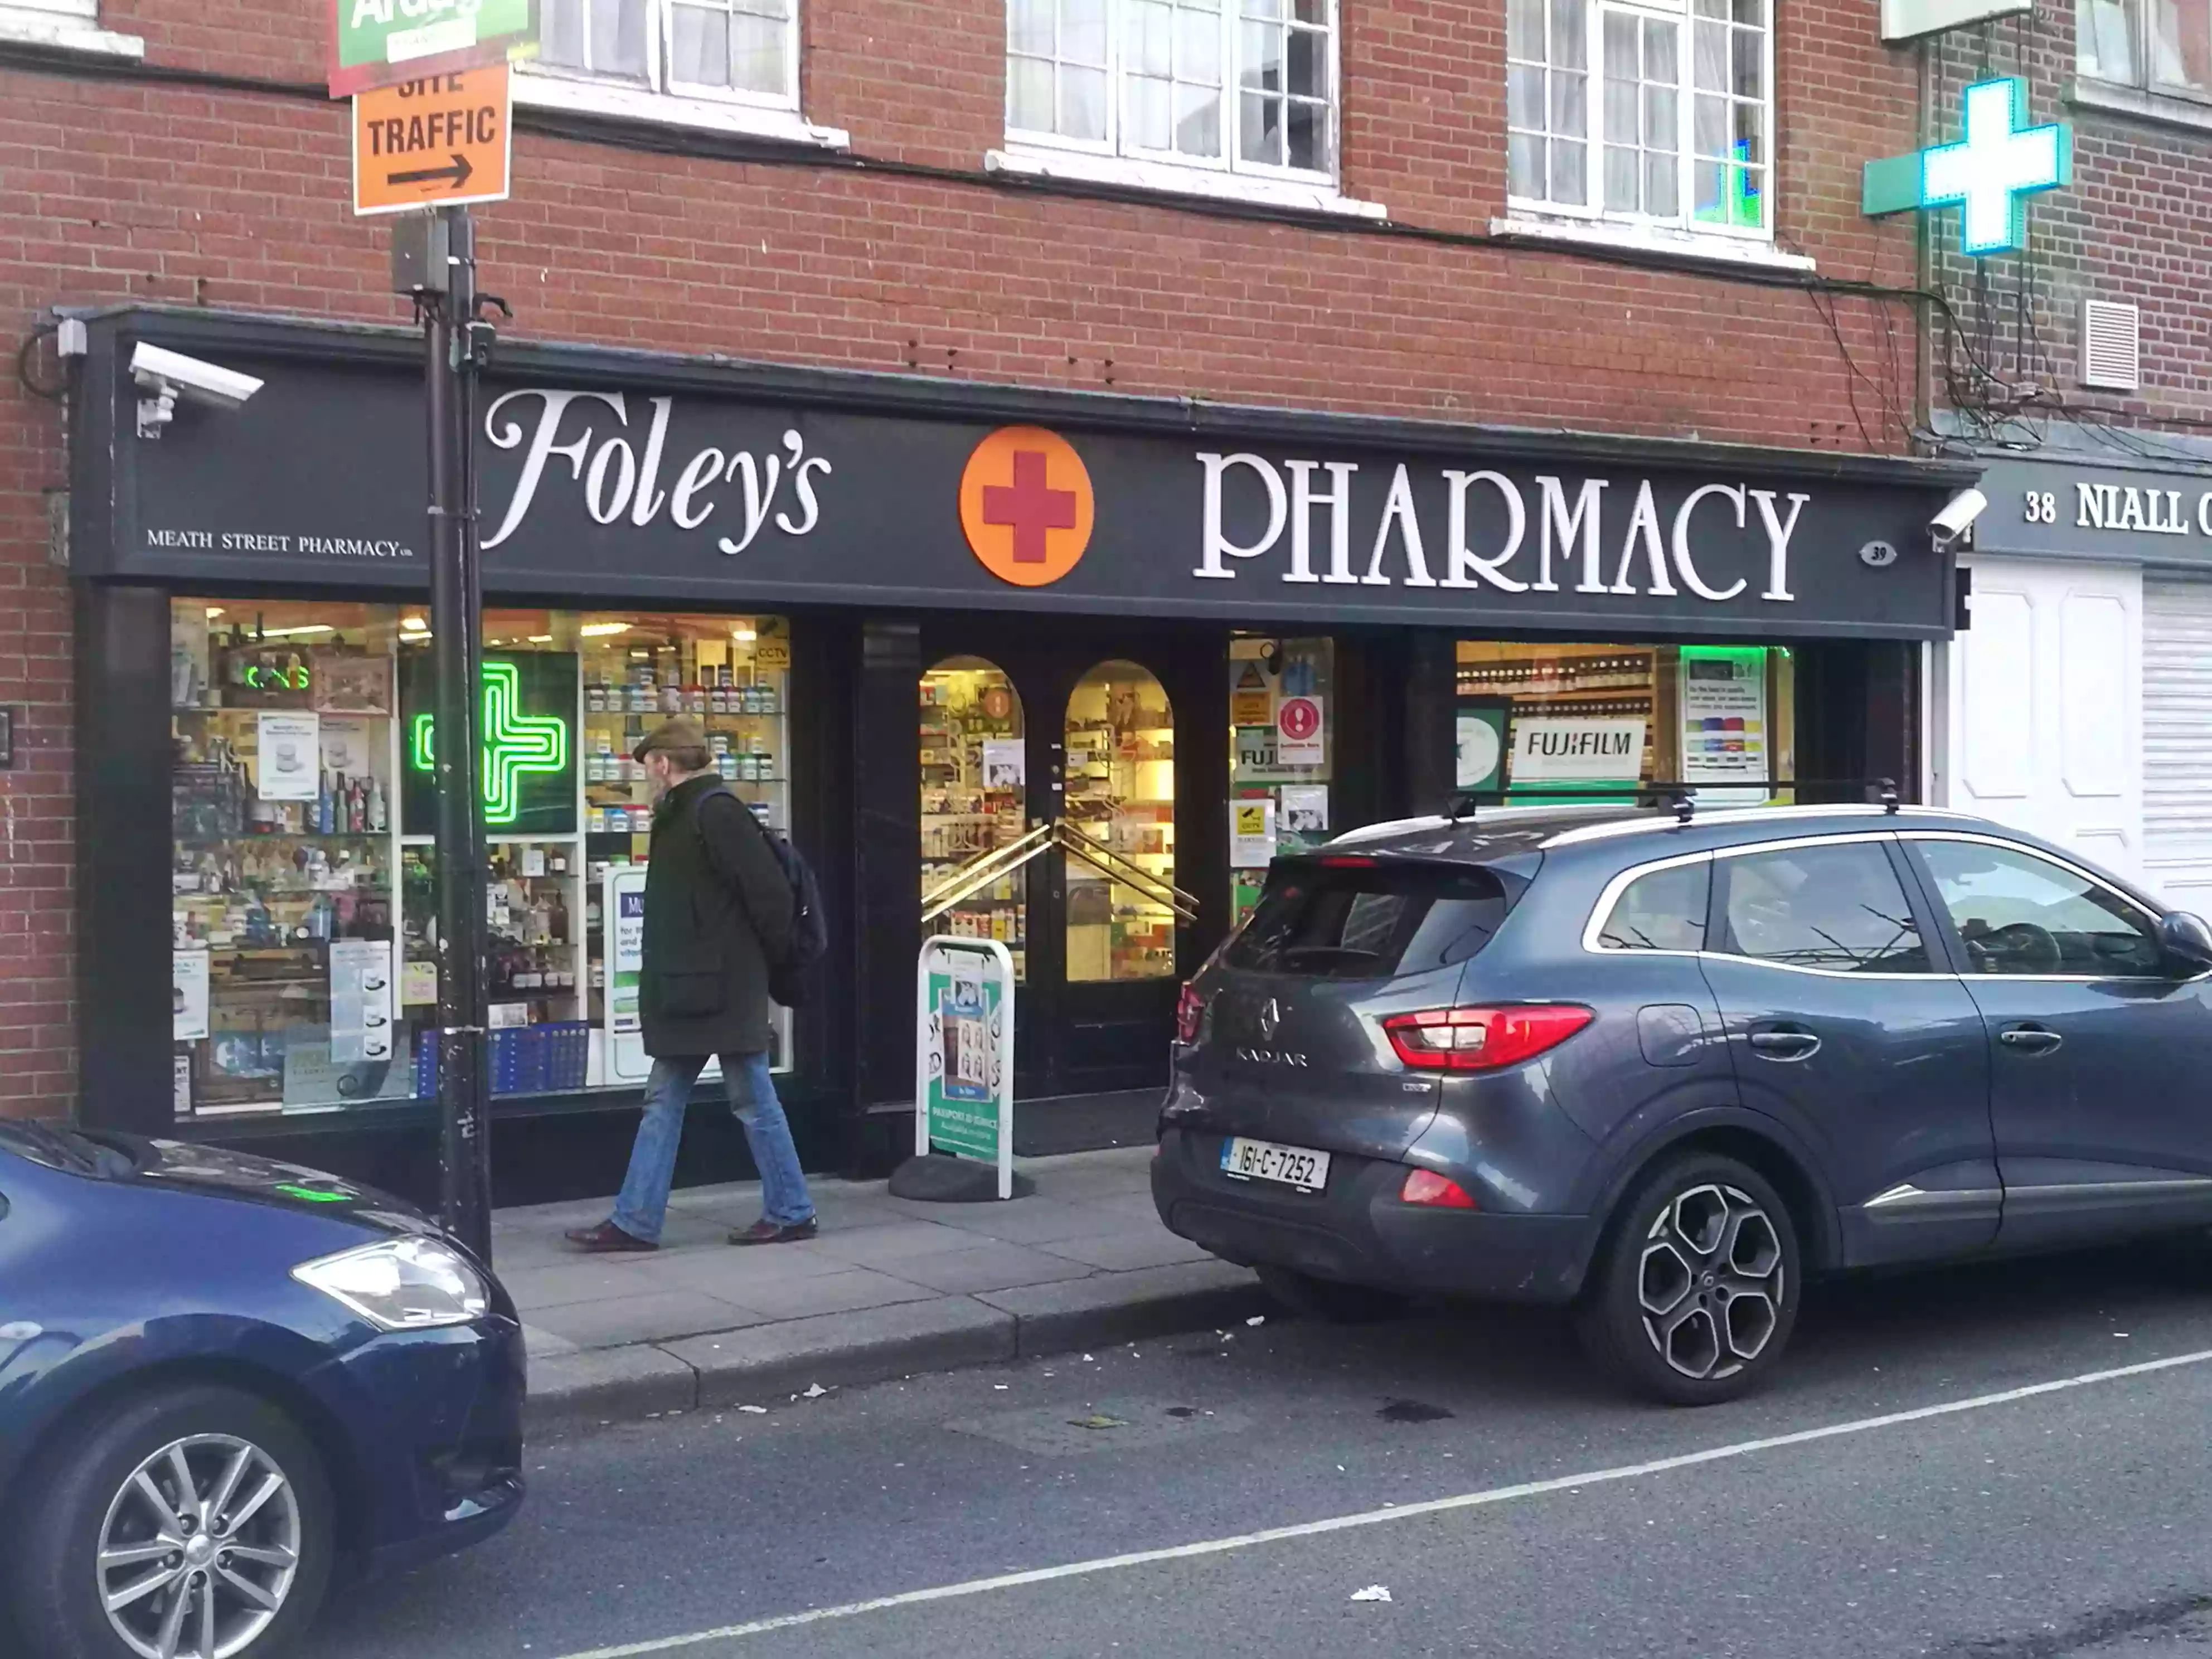 Foley's Pharmacy